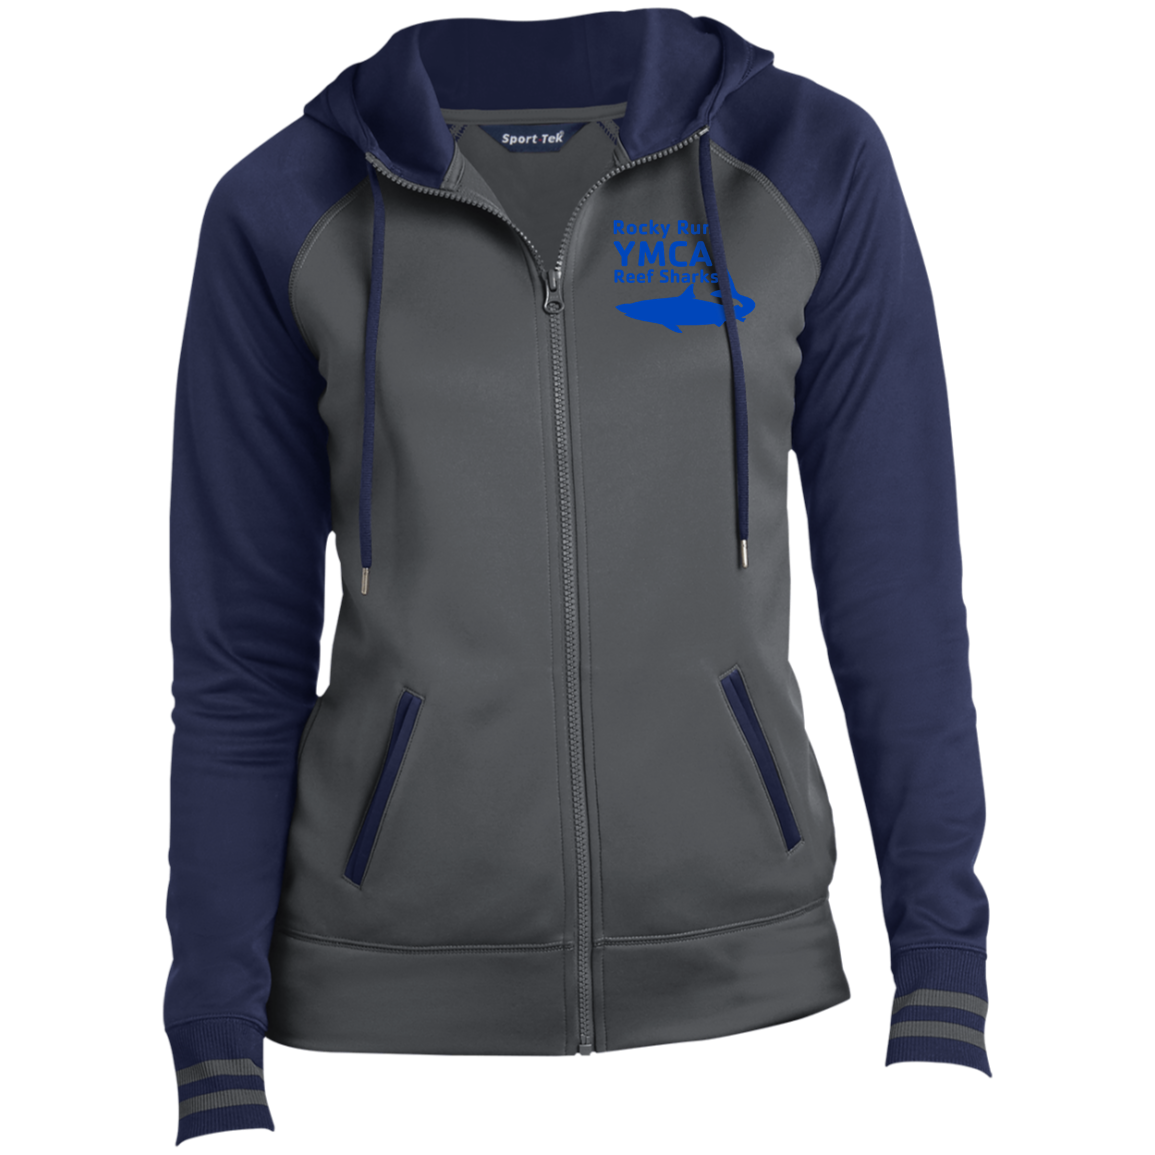 Rocky Run TeamStore Ladies' Sport-Wick® Full-Zip Hooded Jacket